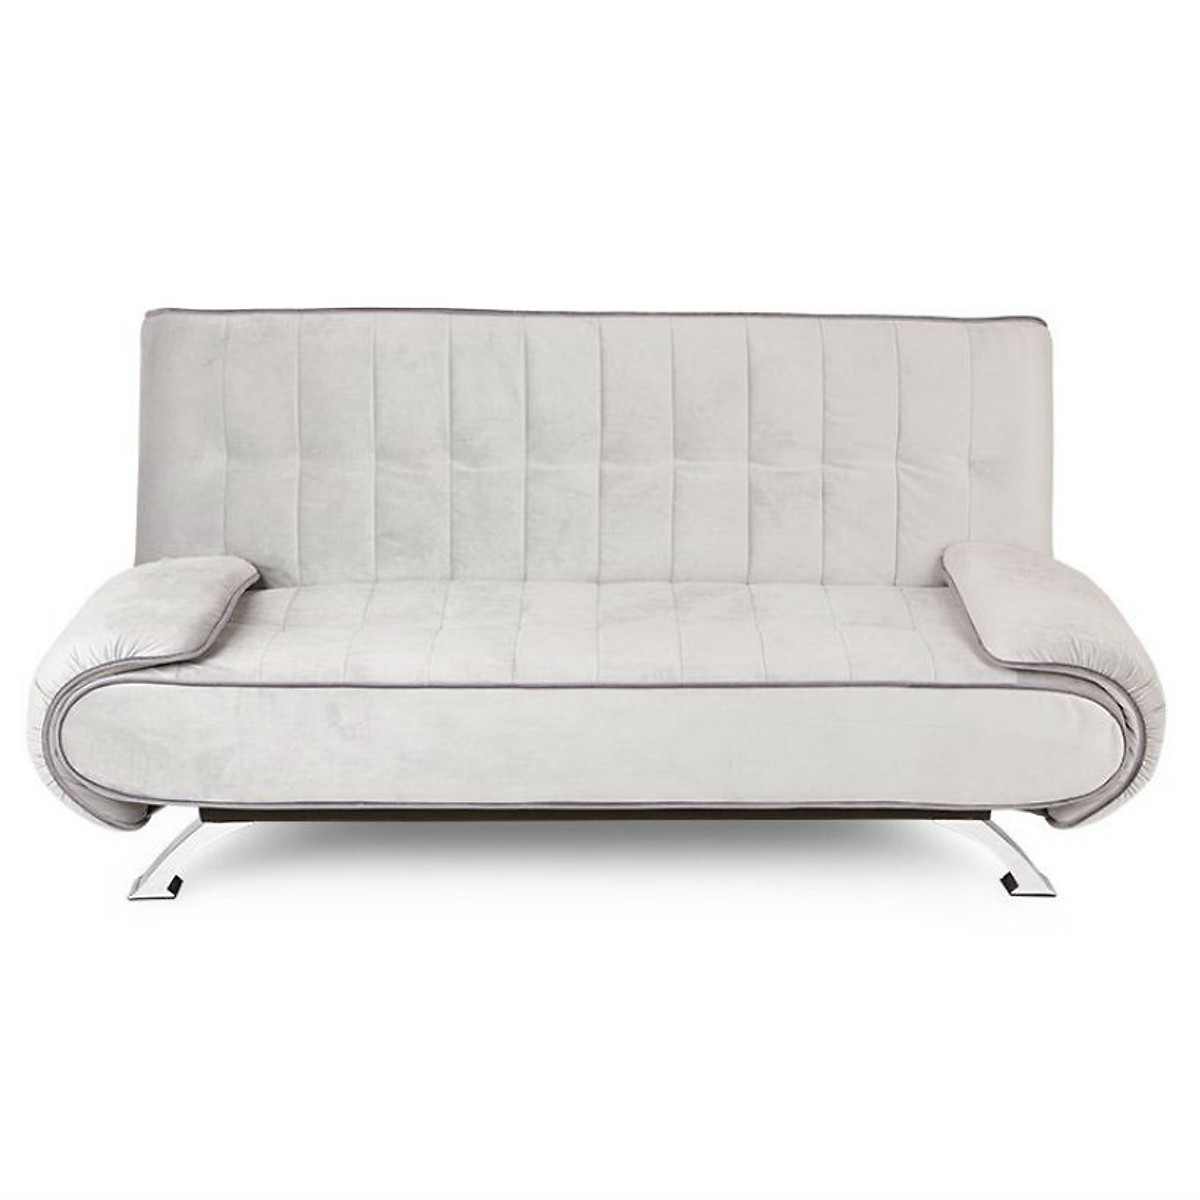 Sofa bed giường lật dọc Tundo màu xám nhạt 200 x 120 cm